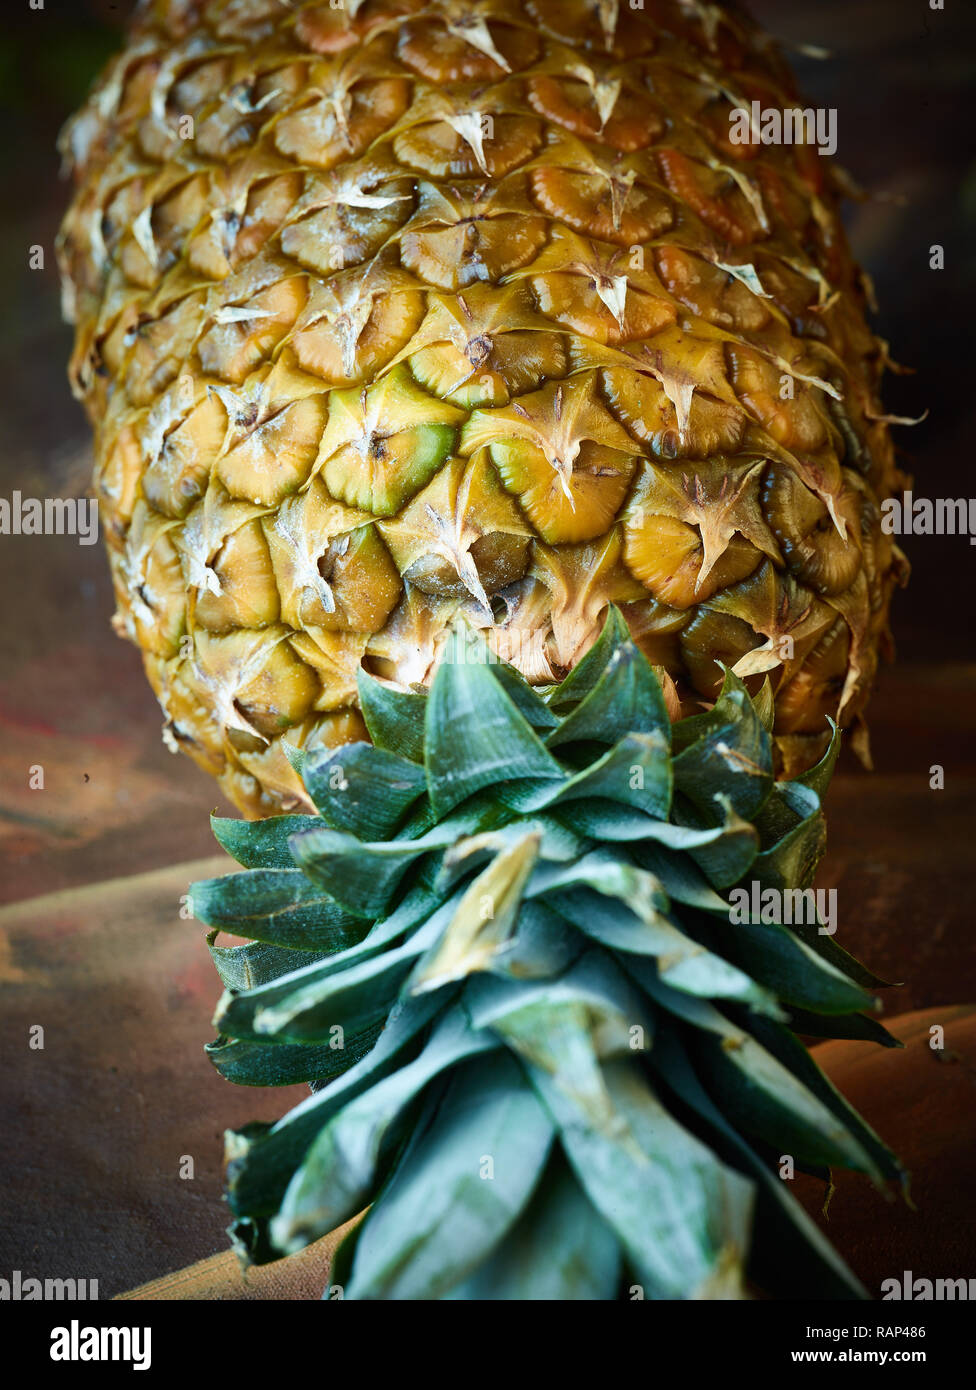 Ananas Obst Stillleben, Nahaufnahme foto Aussaat der Haut im Detail Stockfoto